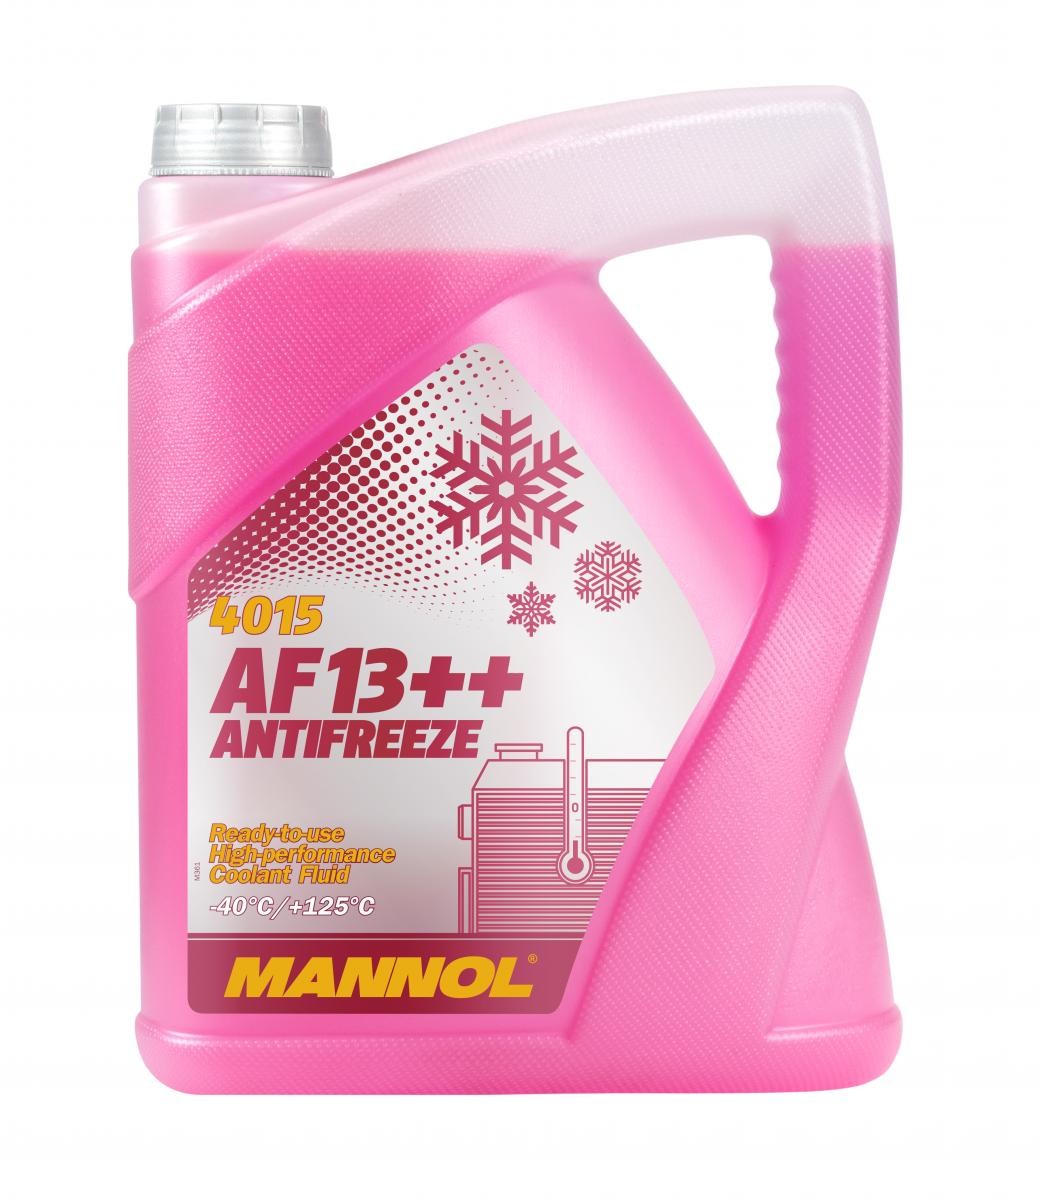 Kupite MANNOL Sredstvo proti zmrzovanju hladilne vode (antifriz) MN4015-5 za MERCEDES-BENZ po zmerni ceni